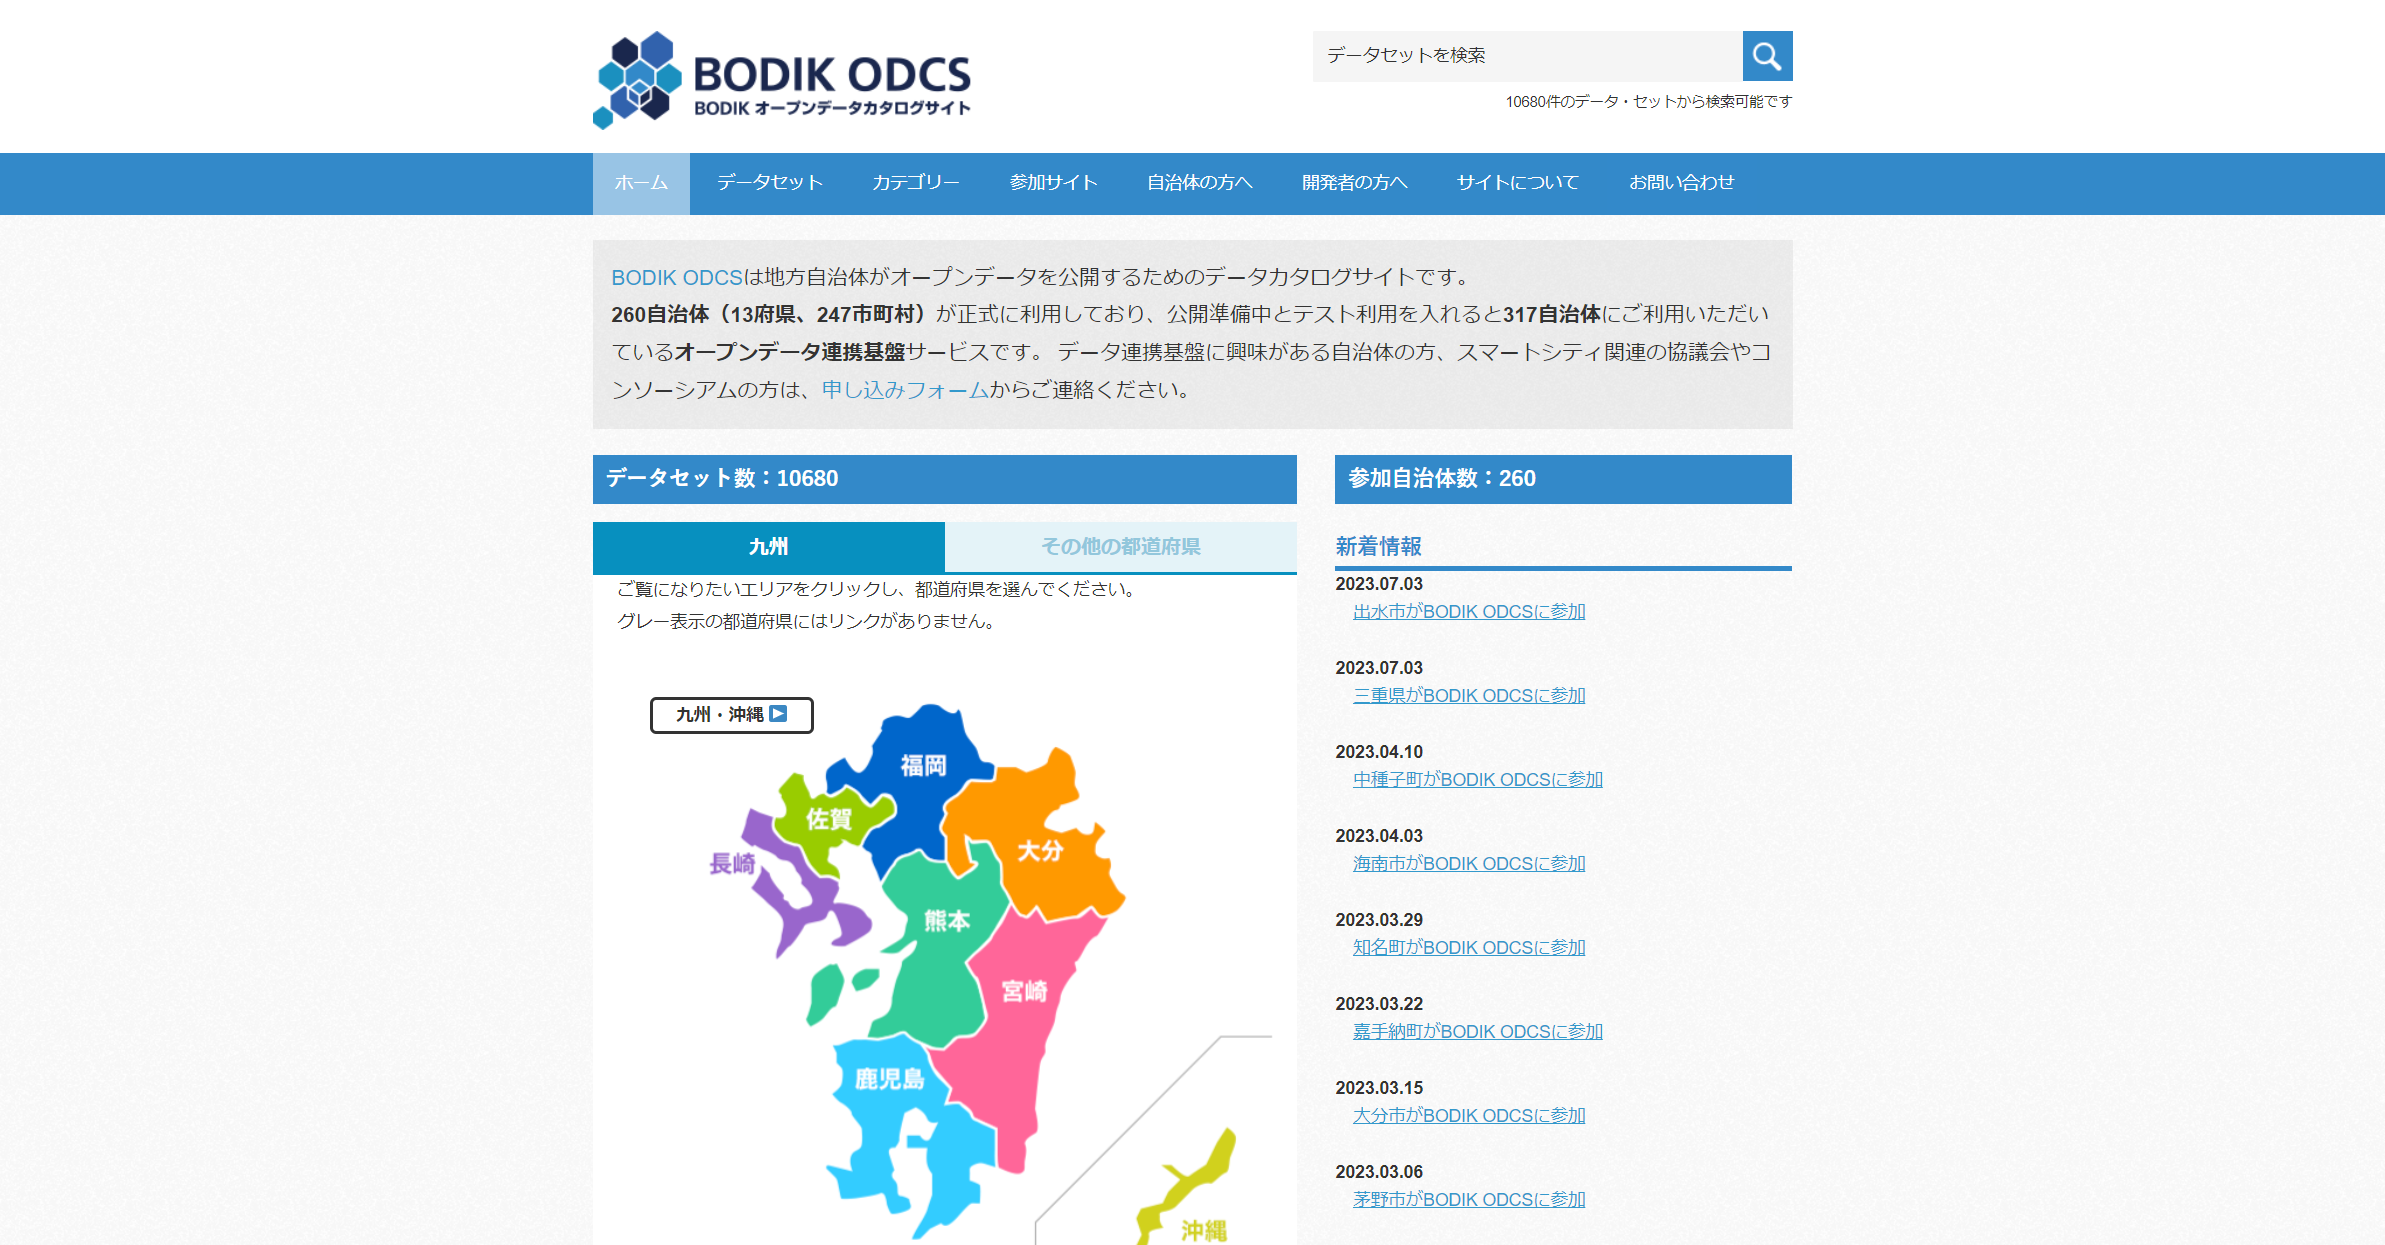 オープンデータカタログサイト「BODIK ODCS」